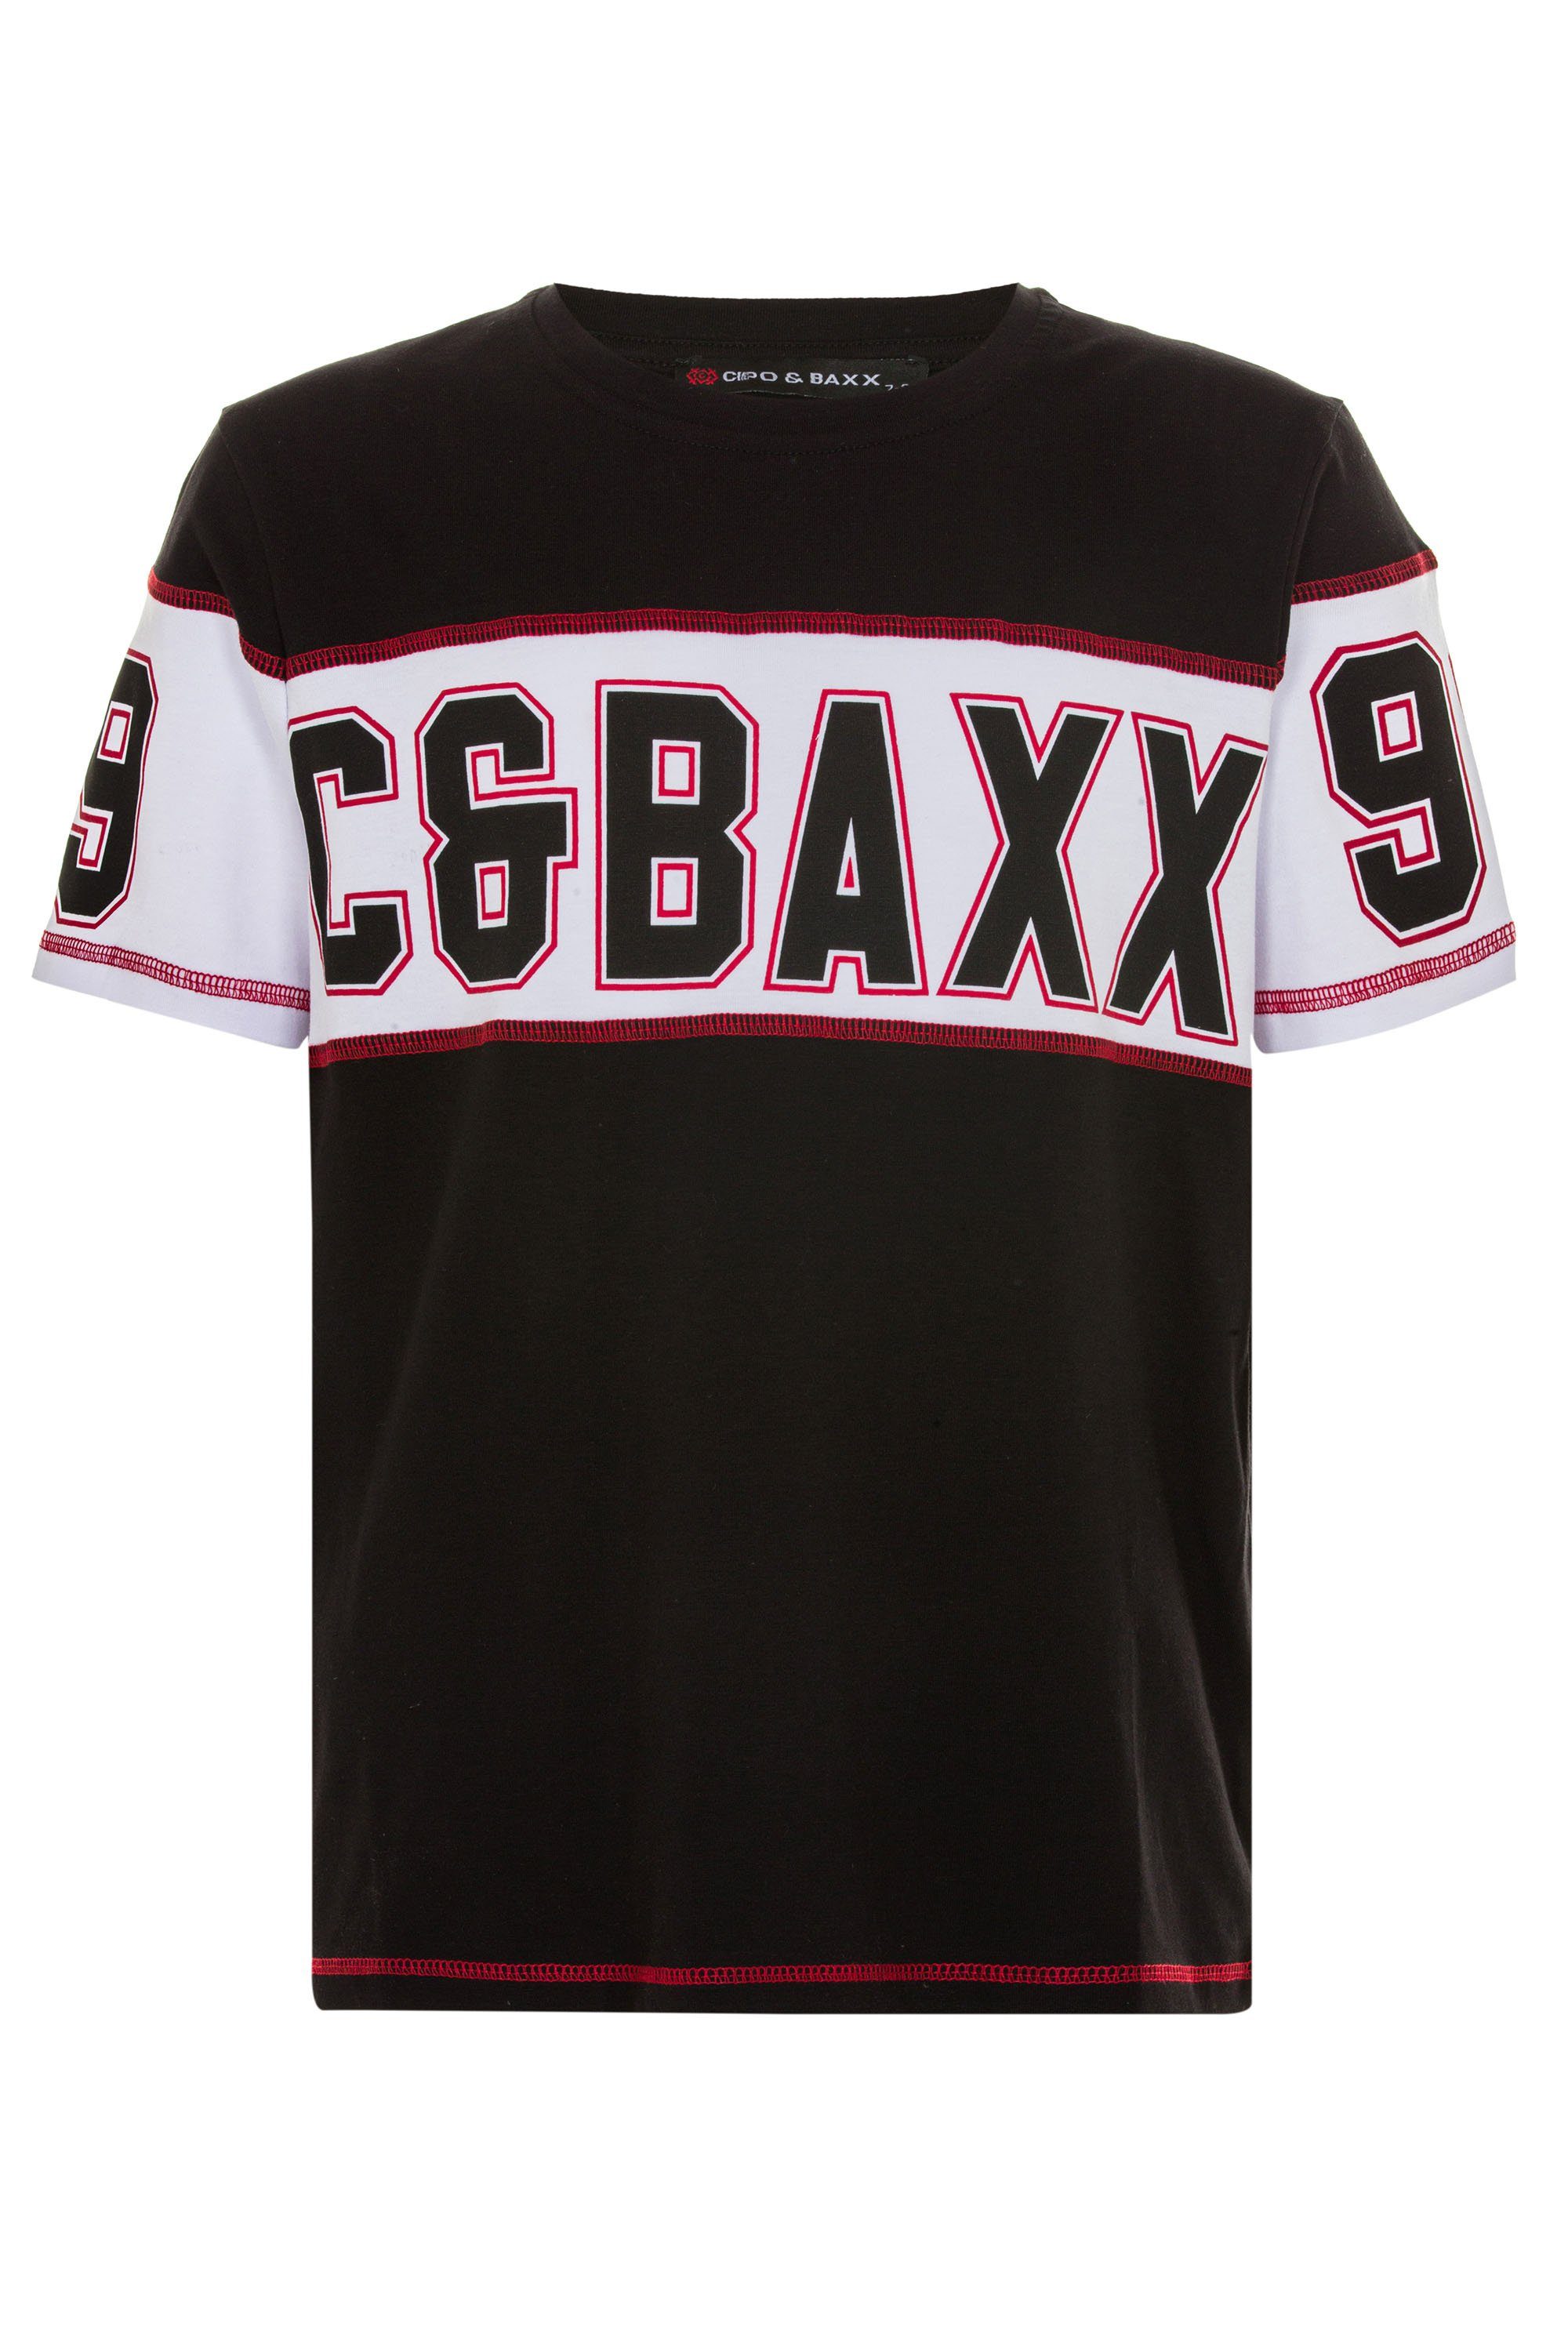 & Baxx Cipo coolem T-Shirt Markenprint mit schwarz